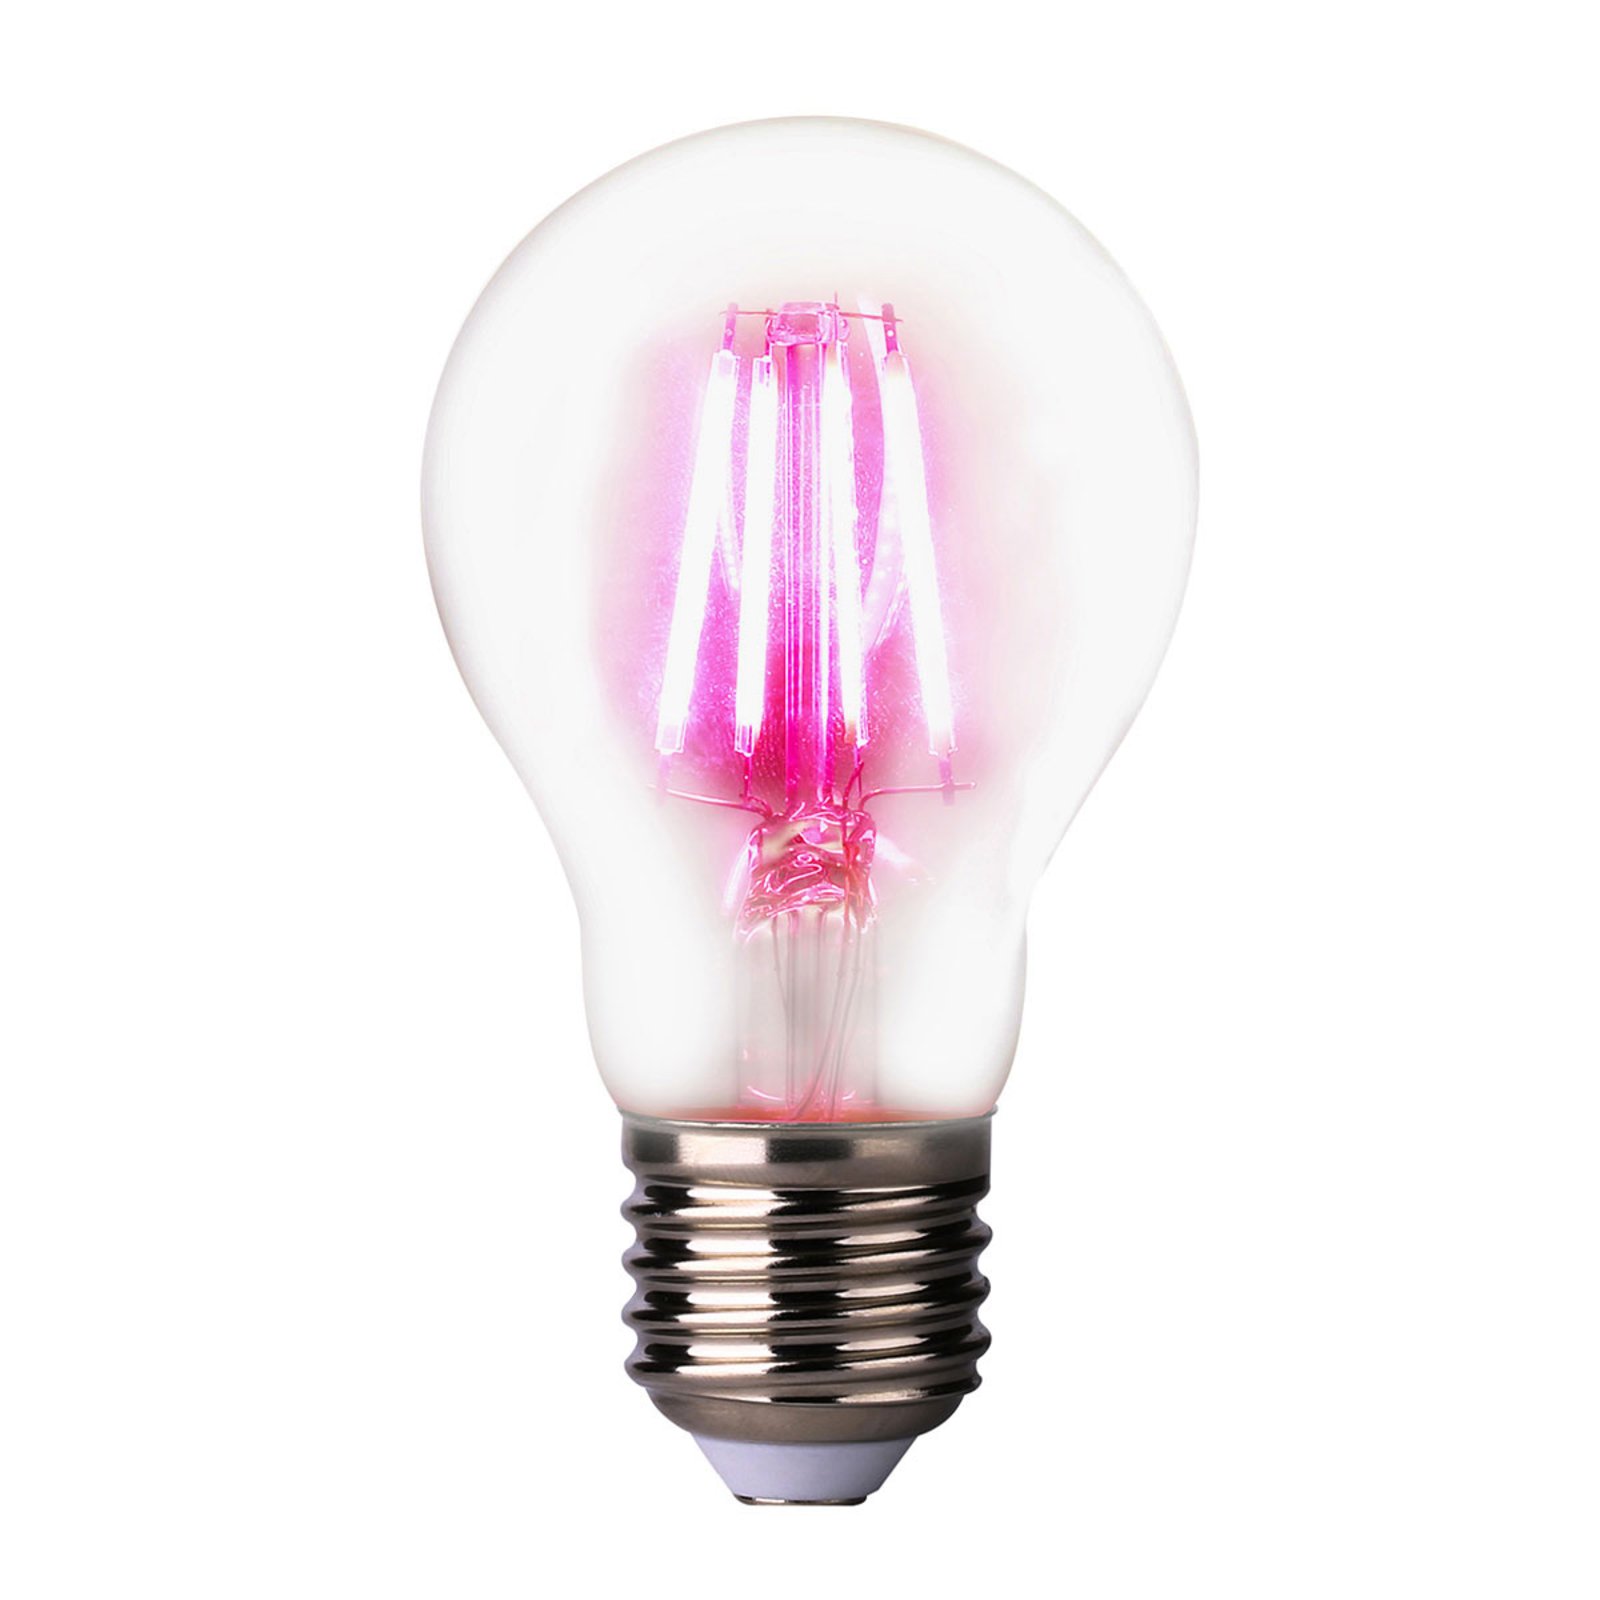 LED növényi lámpa E27 4W, 360°-ban sugárzó